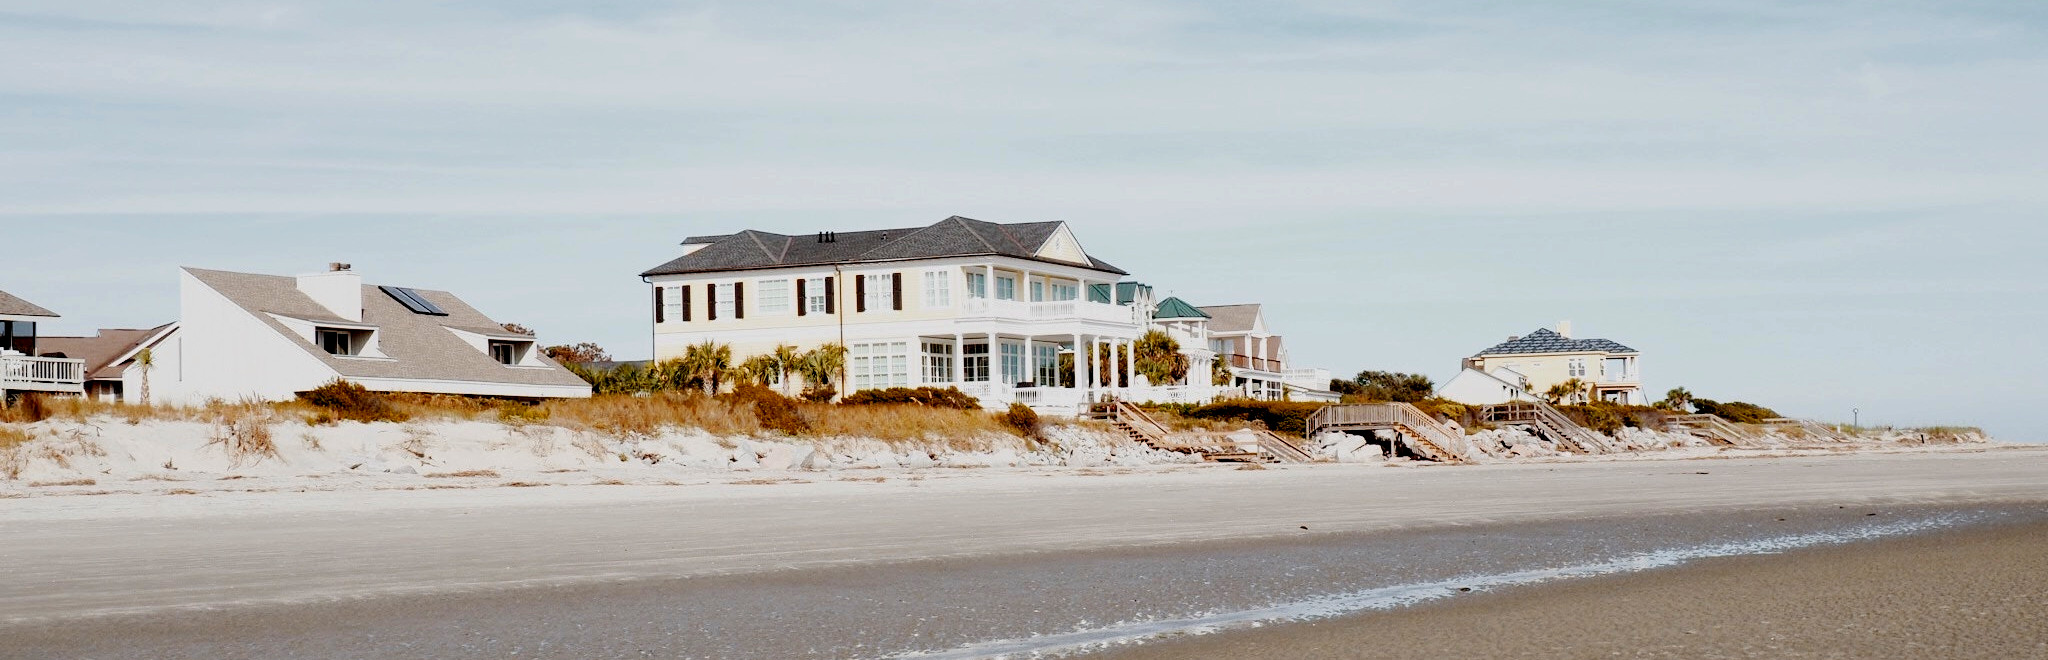 House on the seashore